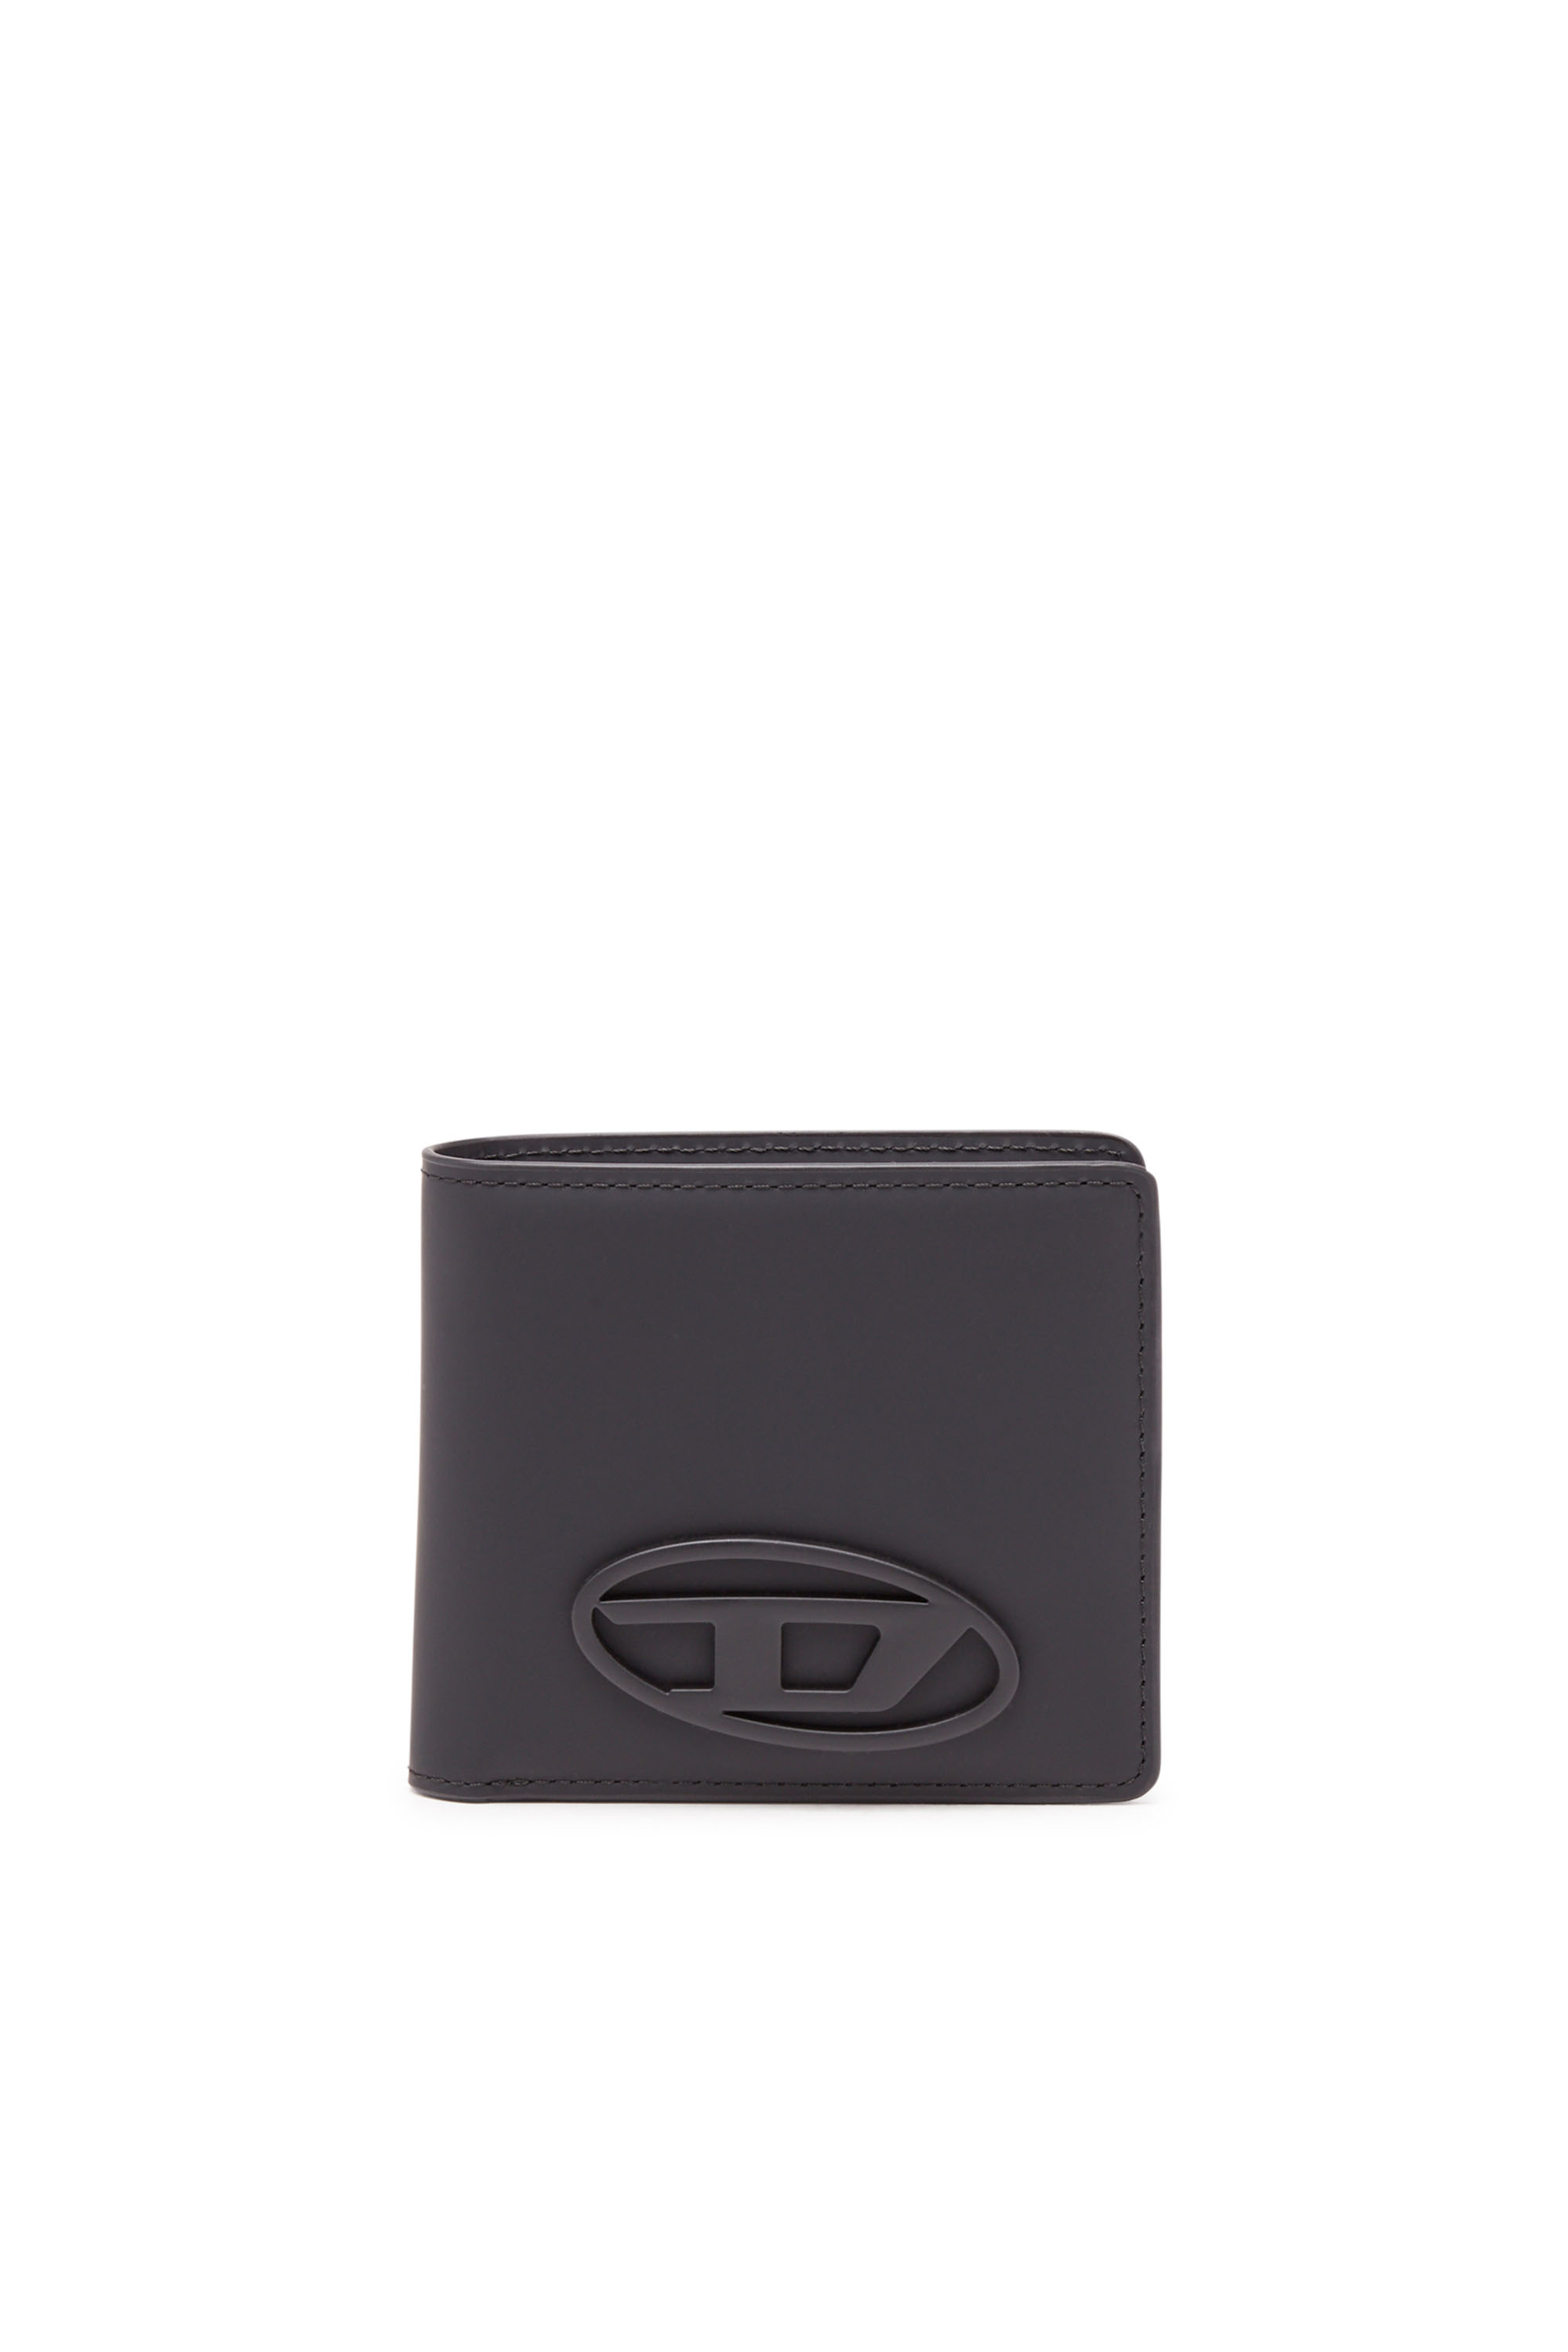 黒ブラック新品 ディーゼル DIESEL 財布 ブラック メンズ財布